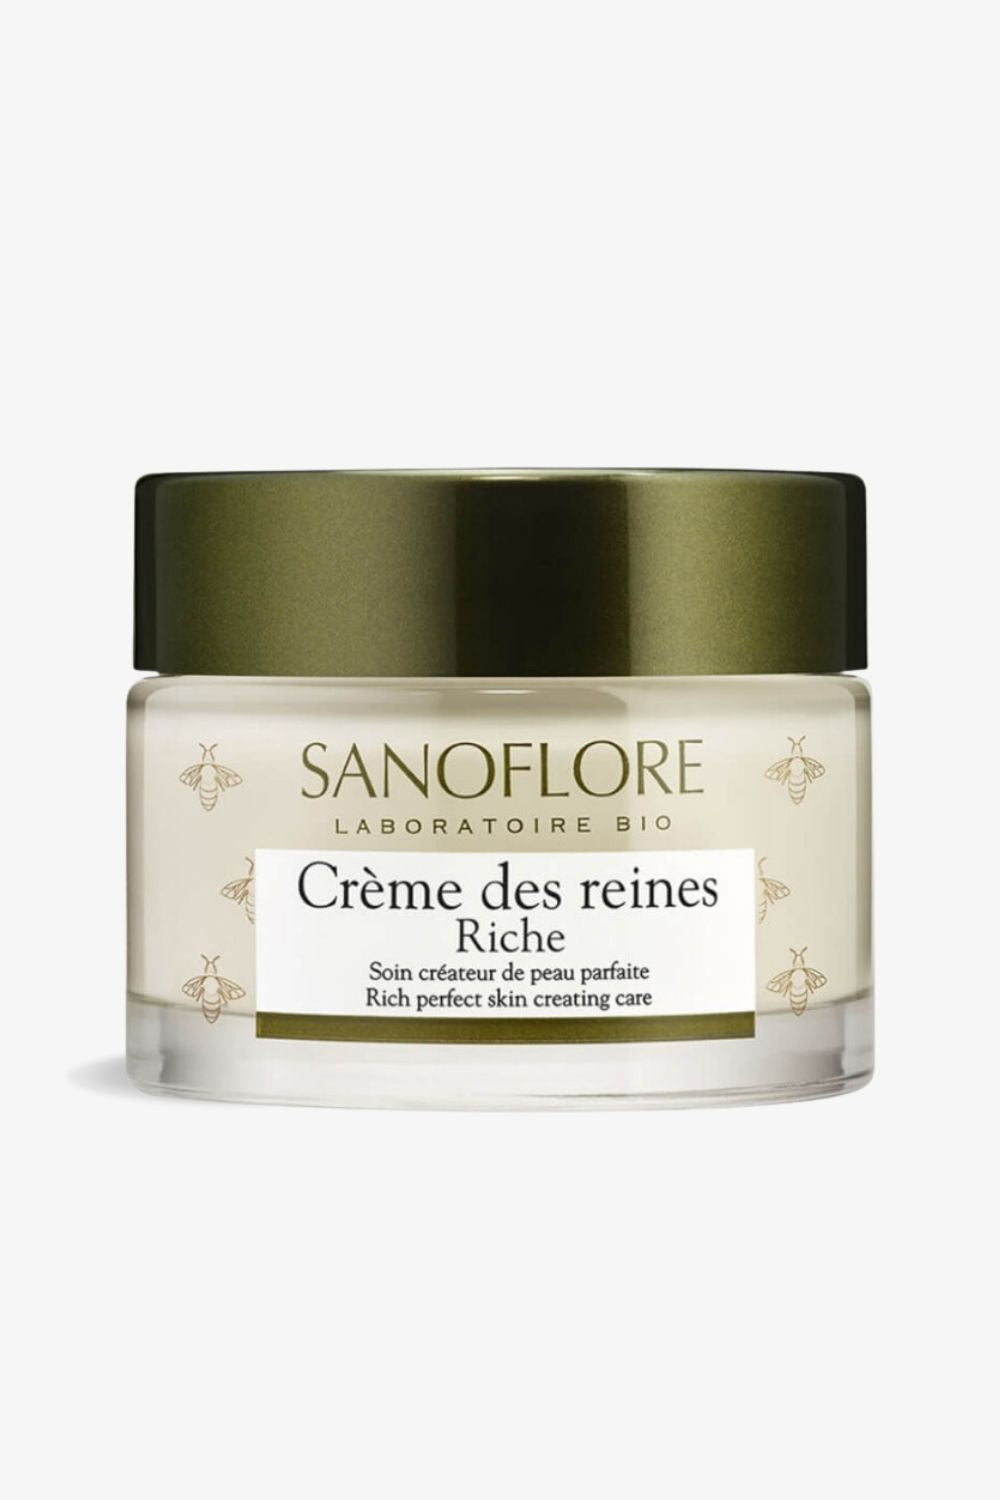 Sanoflore - The Cream of Queens (Rich) - 50ml